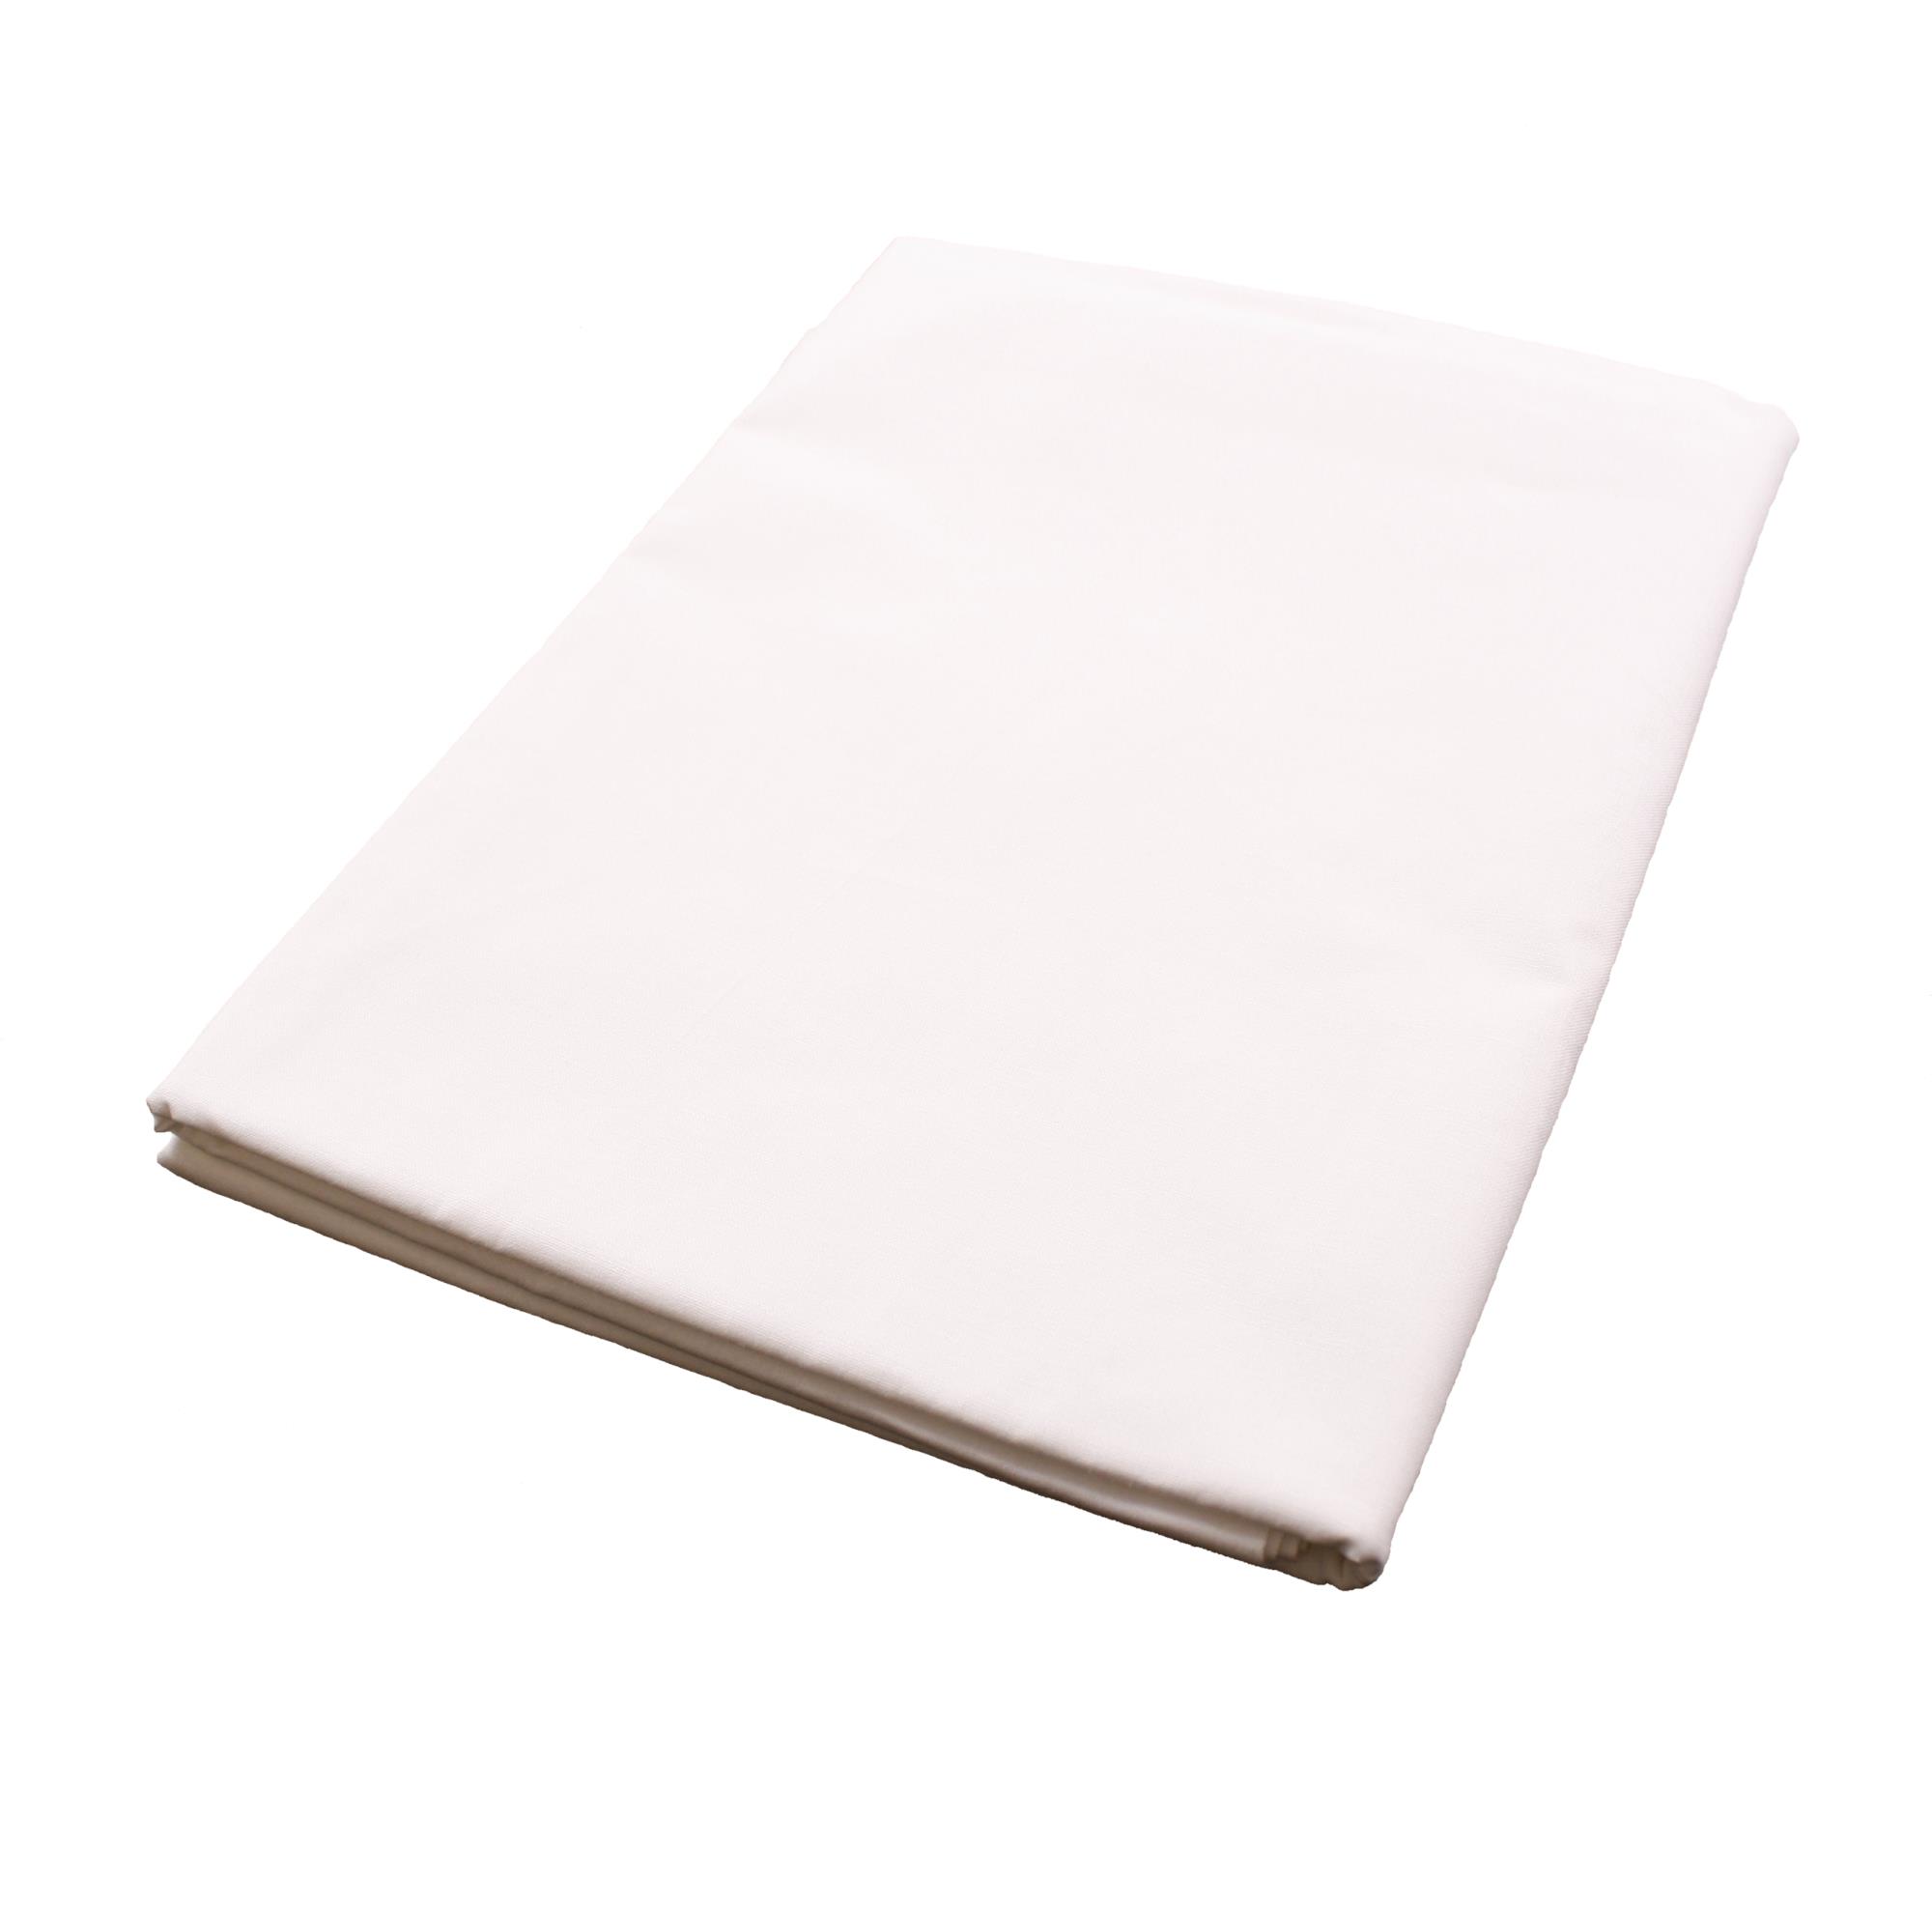 Sommerdecke Weiß Baumwolle Linon-130x220 cm